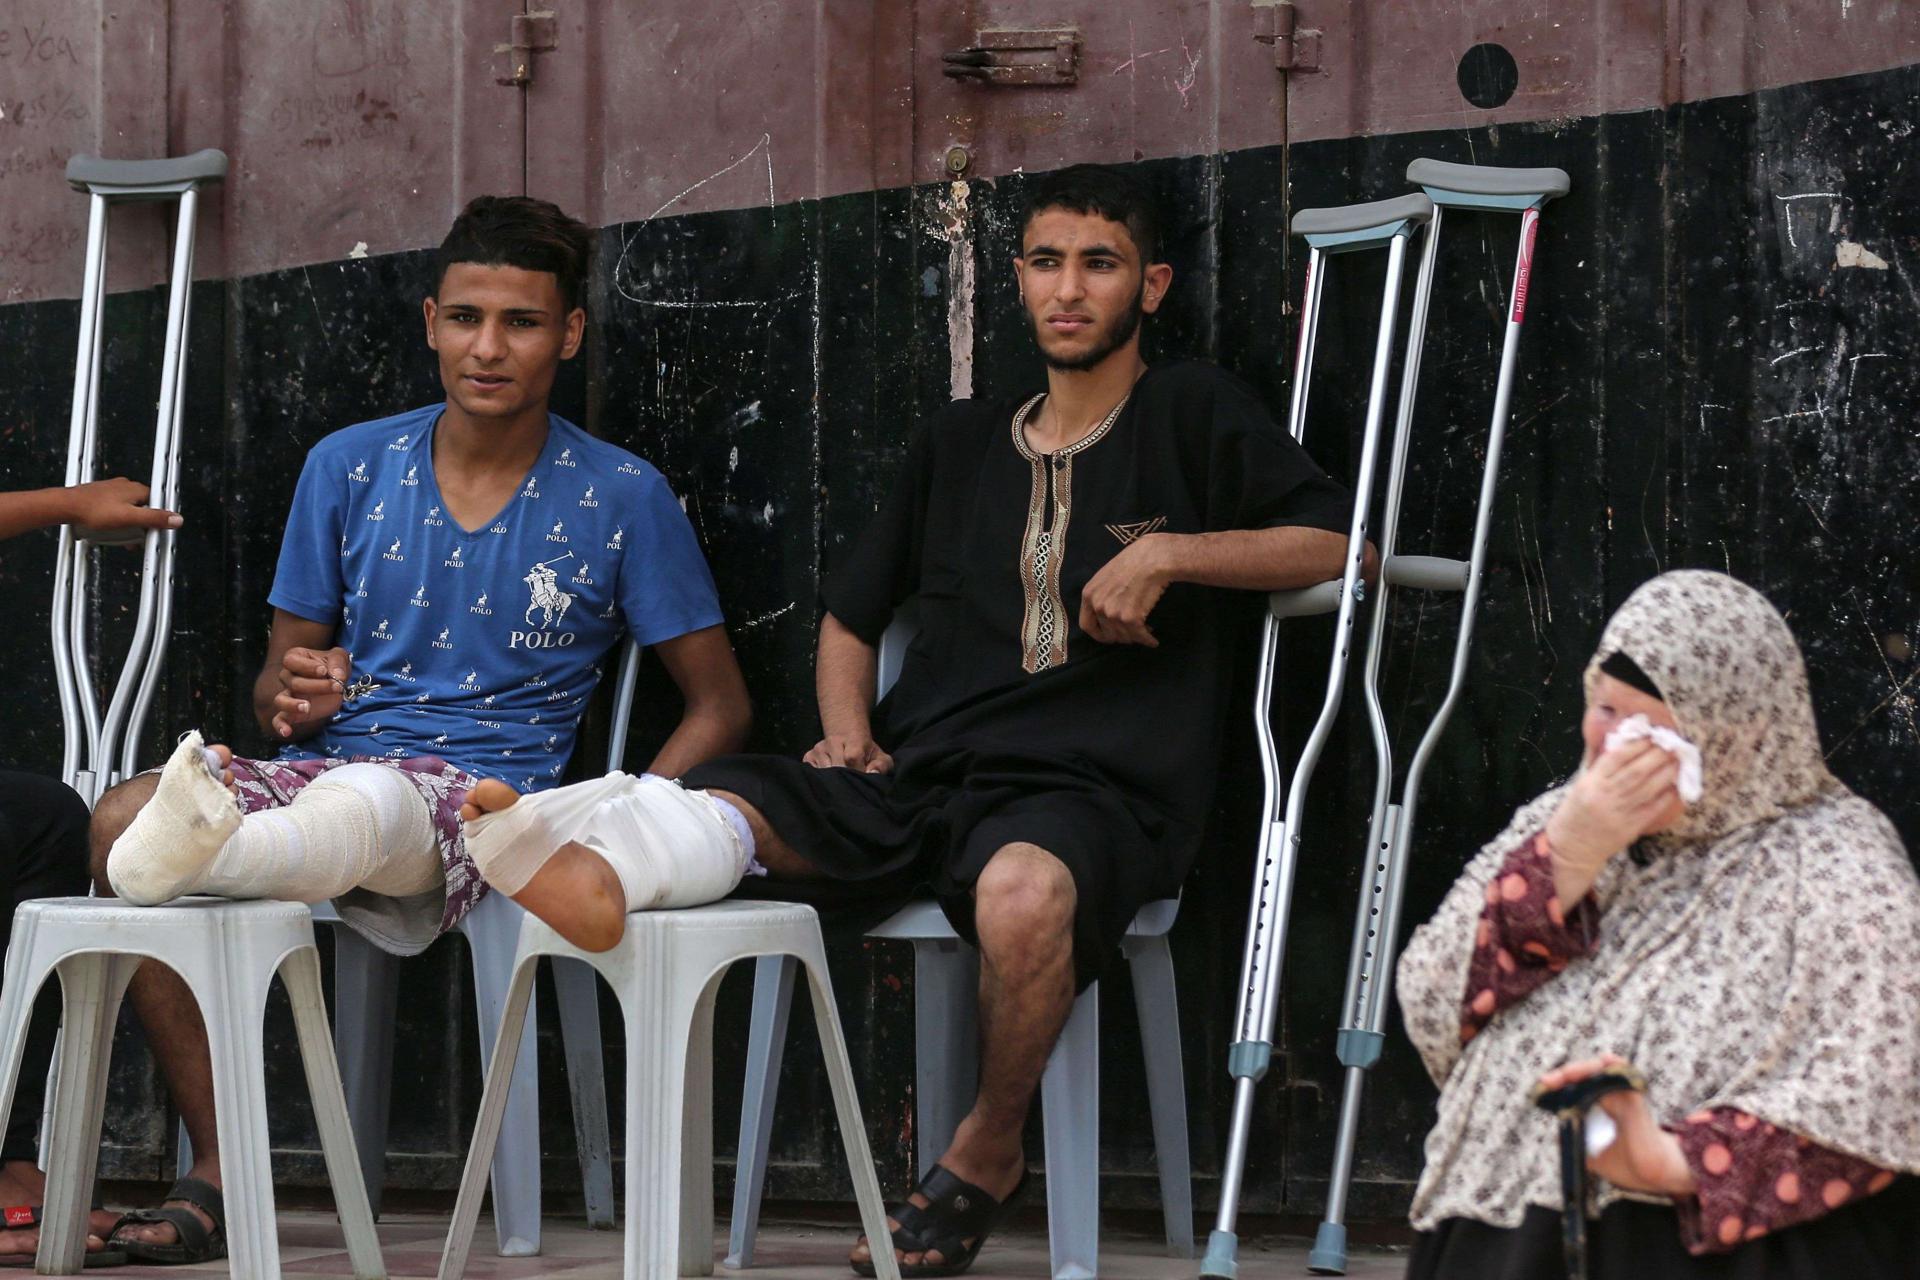 فلسطينيون اصيبوا في ارجلهم في المواجهات الأخيرة مع الاسرائيليين يحضرون مأتما لفلسطيني قتل في المواجهات